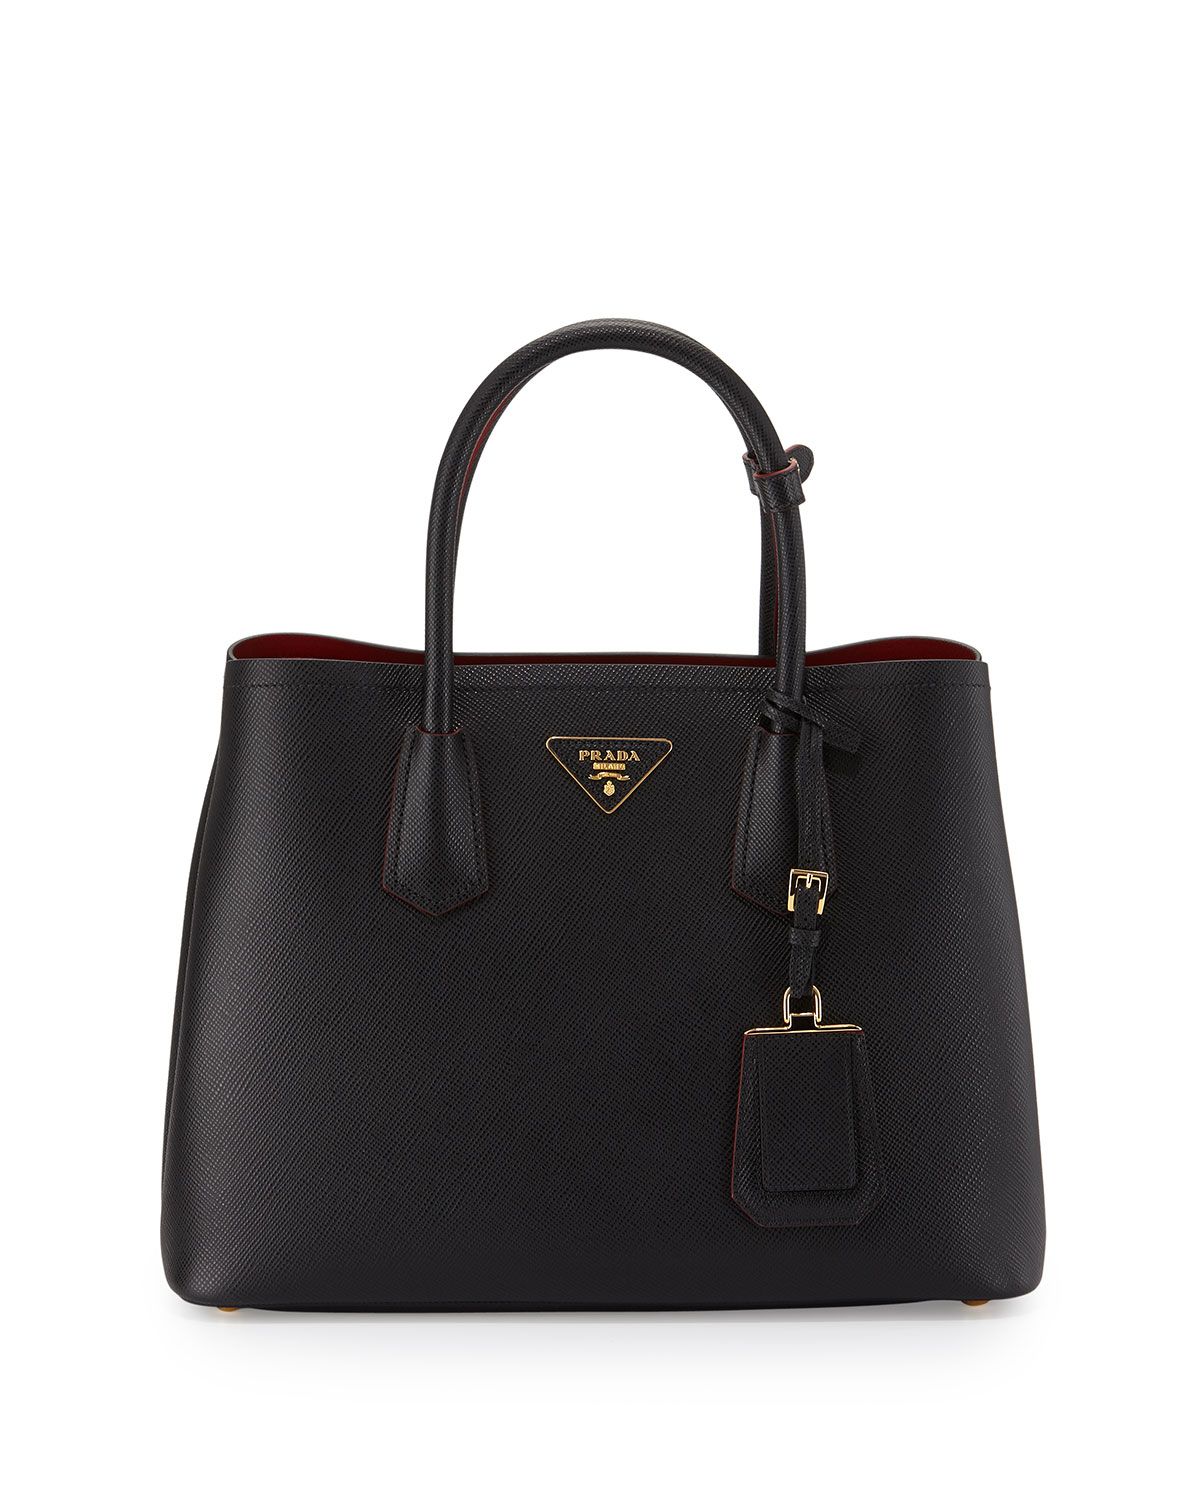 Prada Saffiano Cuir Double Small Tote Bag, Black/Red (Nero+Fuoco) | Neiman Marcus